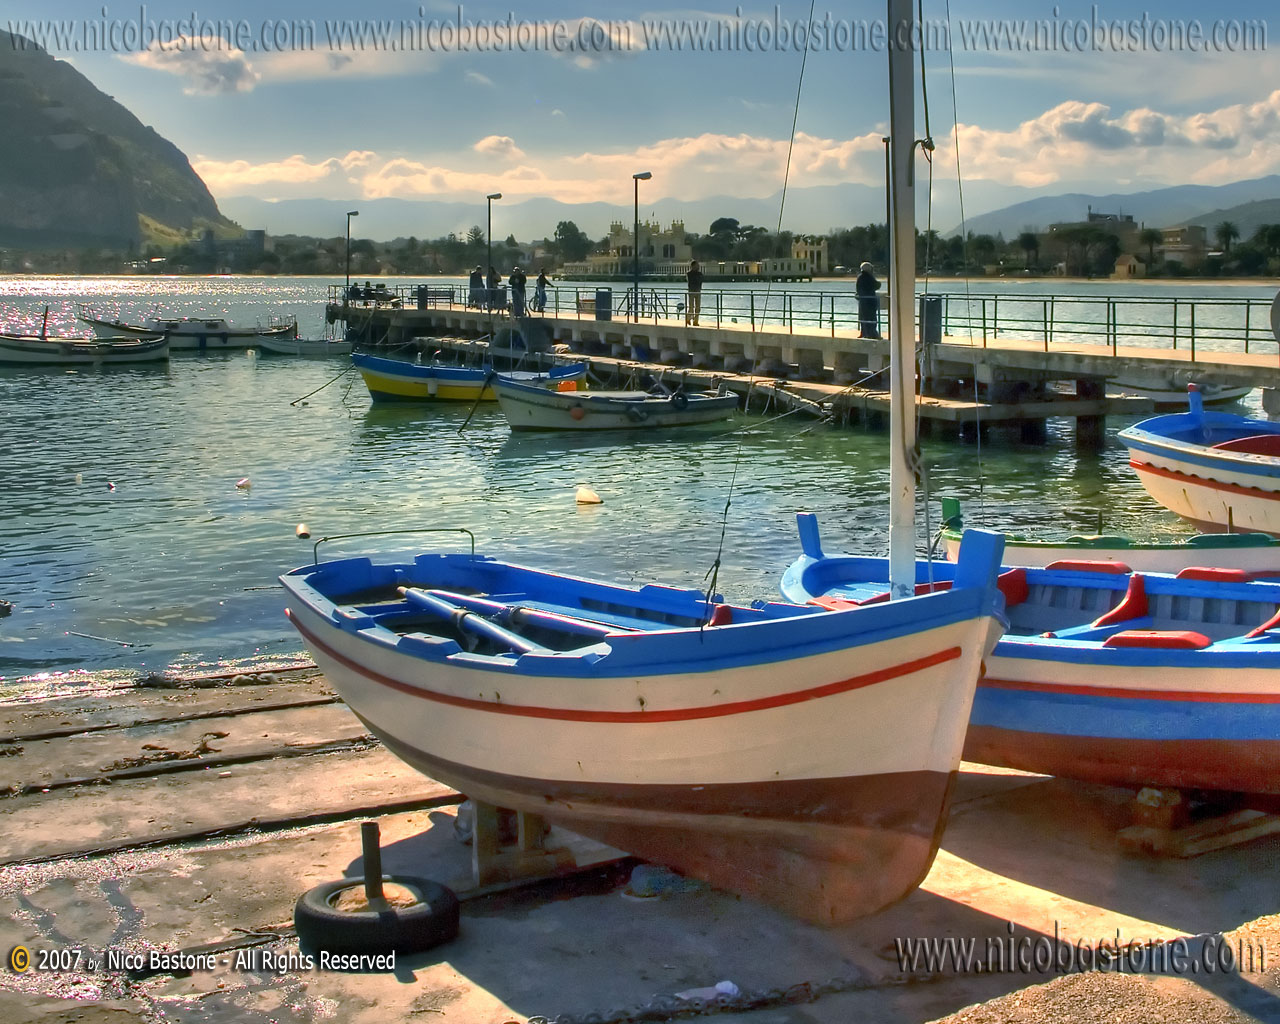 Mondello, Palermo "Paesaggio con barche 3 - Seascape with boats # 3" foto photos, images, pictures, fotos, pics - Wallpapers 1280x1024 Sfondi per Desktop